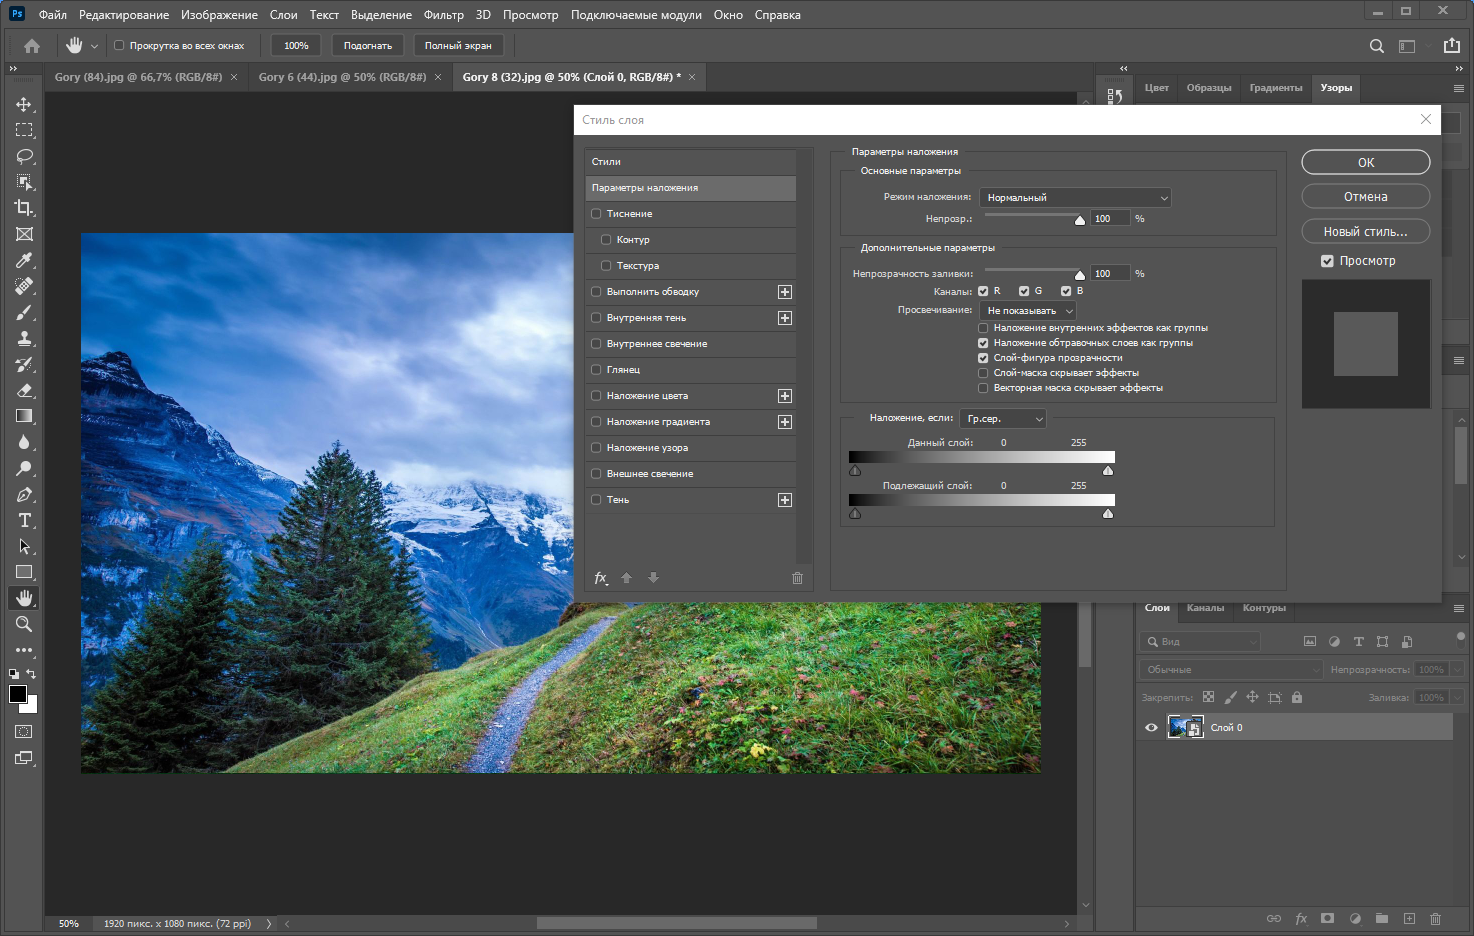 Adobe Photoshop 2021 22.5.6.749 RePack by KpoJIuK [Multi/Ru]